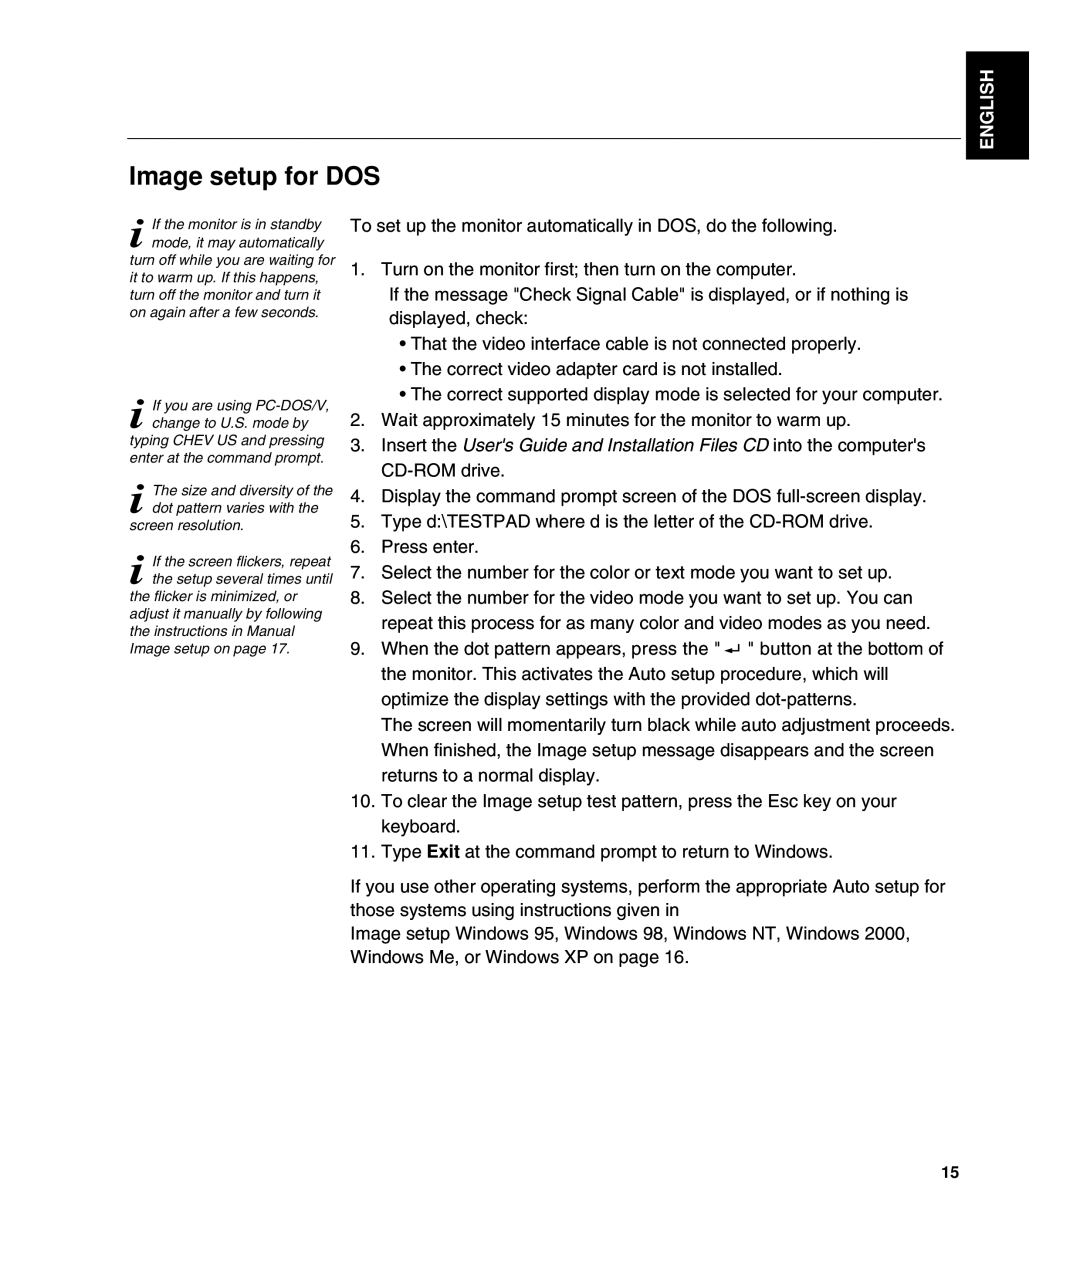 Lenovo L190 manual Image setup for DOS, English 